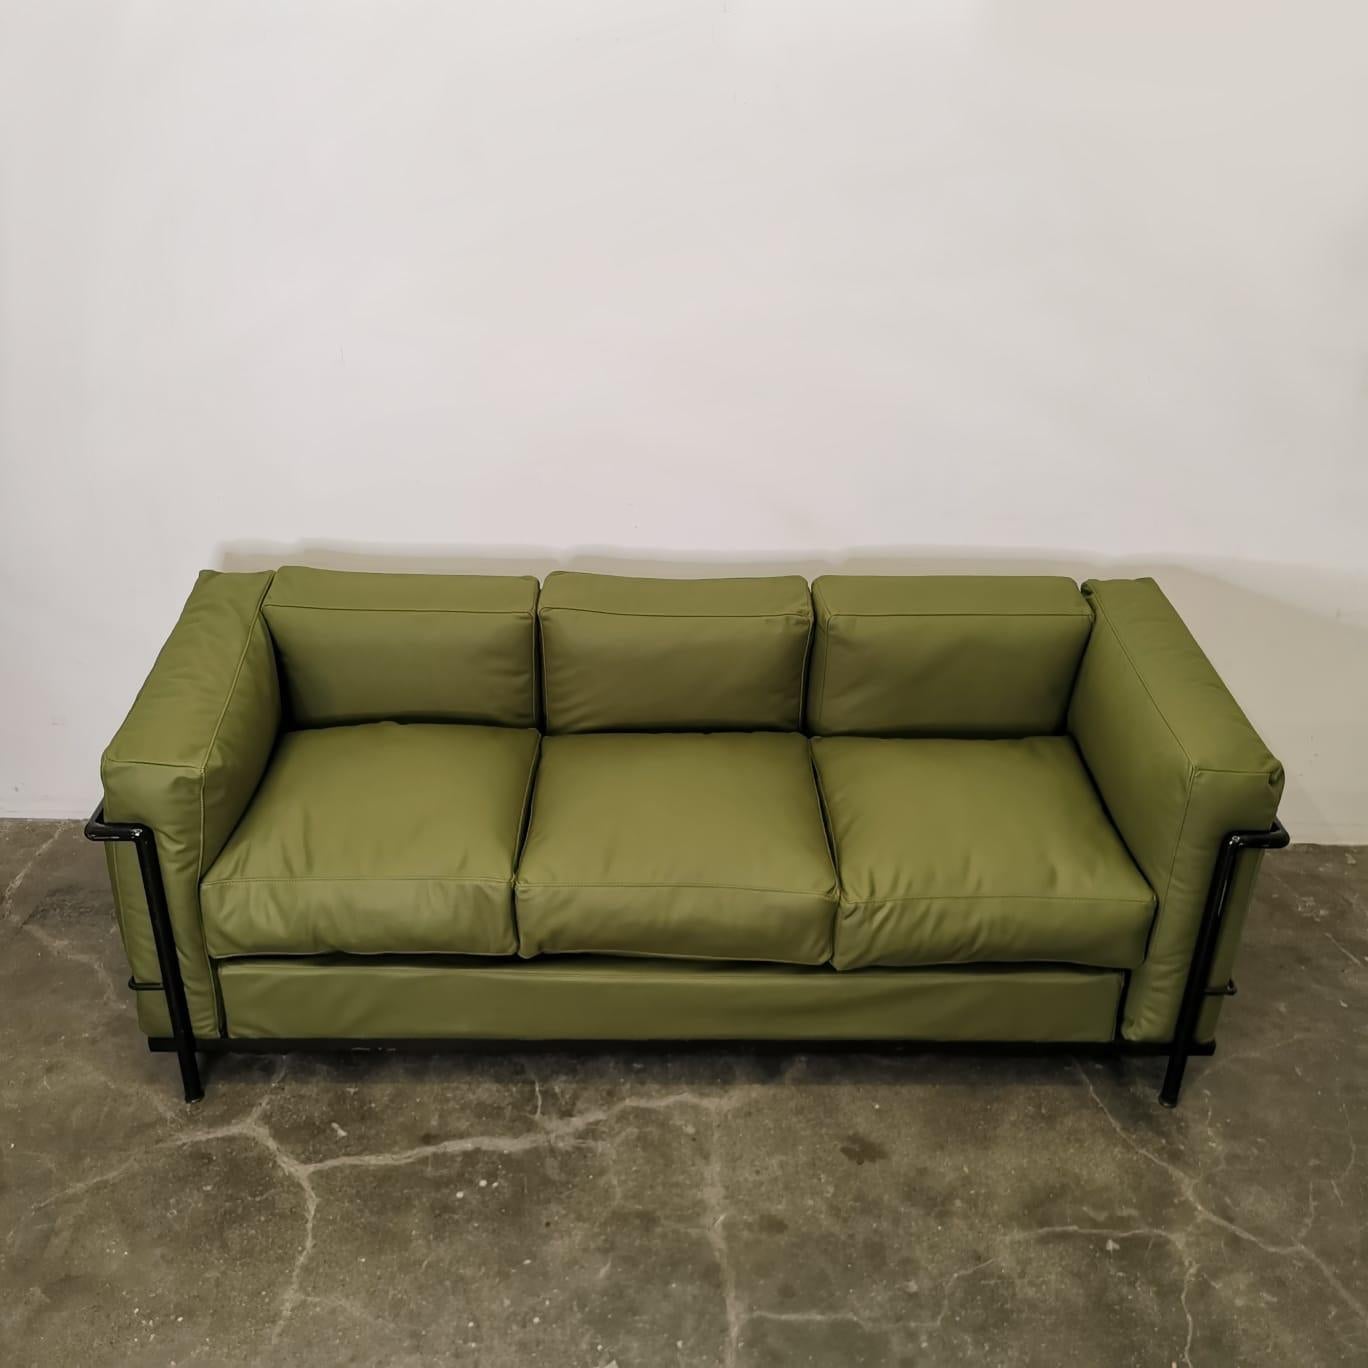 Das von Le Corbusier entworfene Sofa LC2 ist eine echte Ikone des modernen Möbeldesigns. Mit seinen klaren Linien, seiner minimalistischen Ästhetik und seiner tadellosen Verarbeitung verkörpert dieses Sofa sowohl Komfort als auch Stil. Das LC2-Sofa